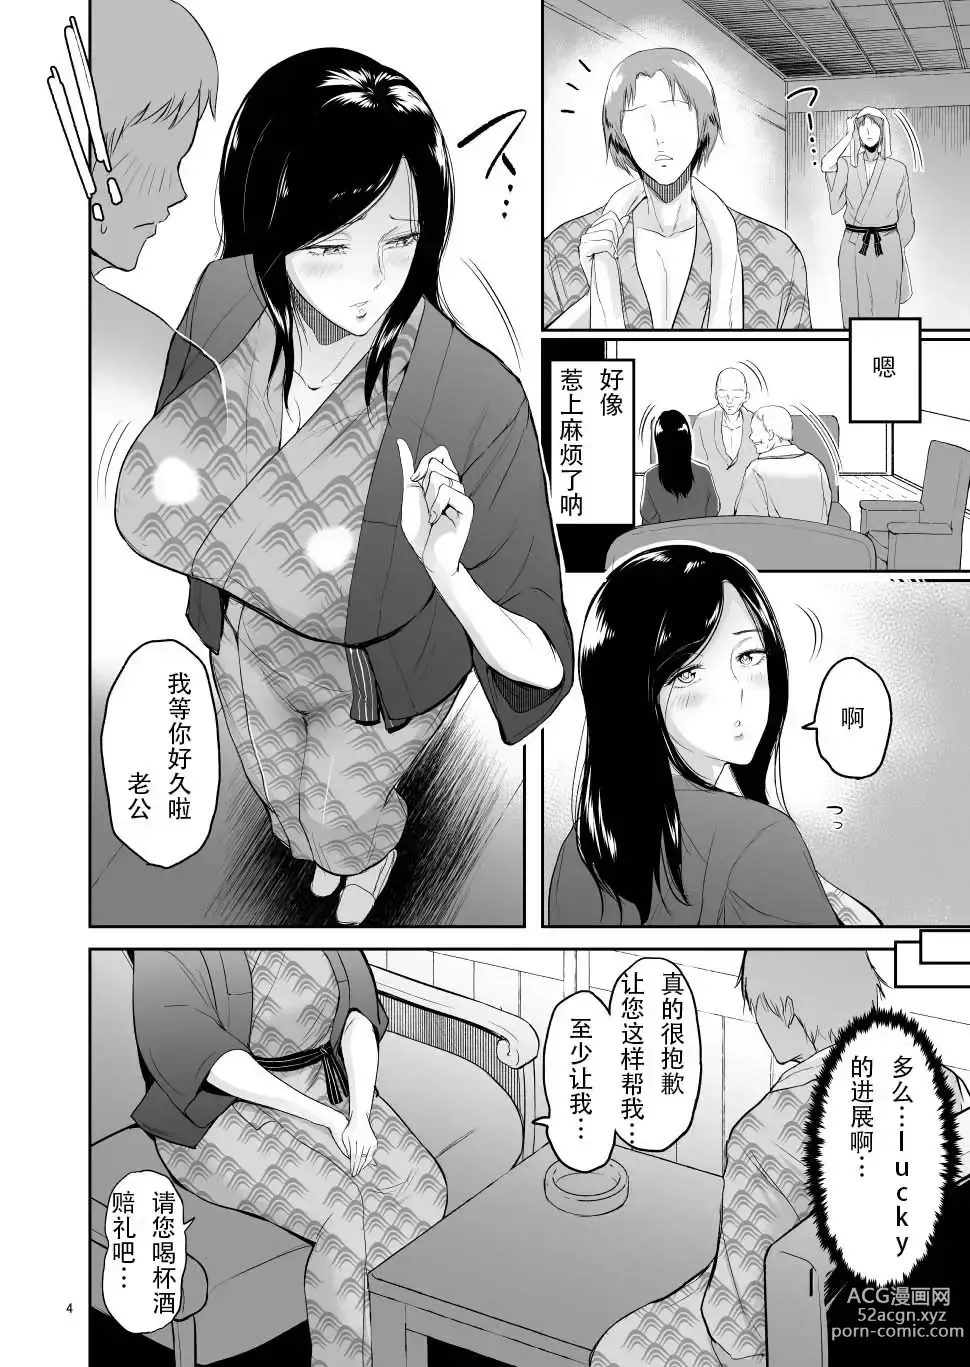 Page 3 of doujinshi asfsfascas